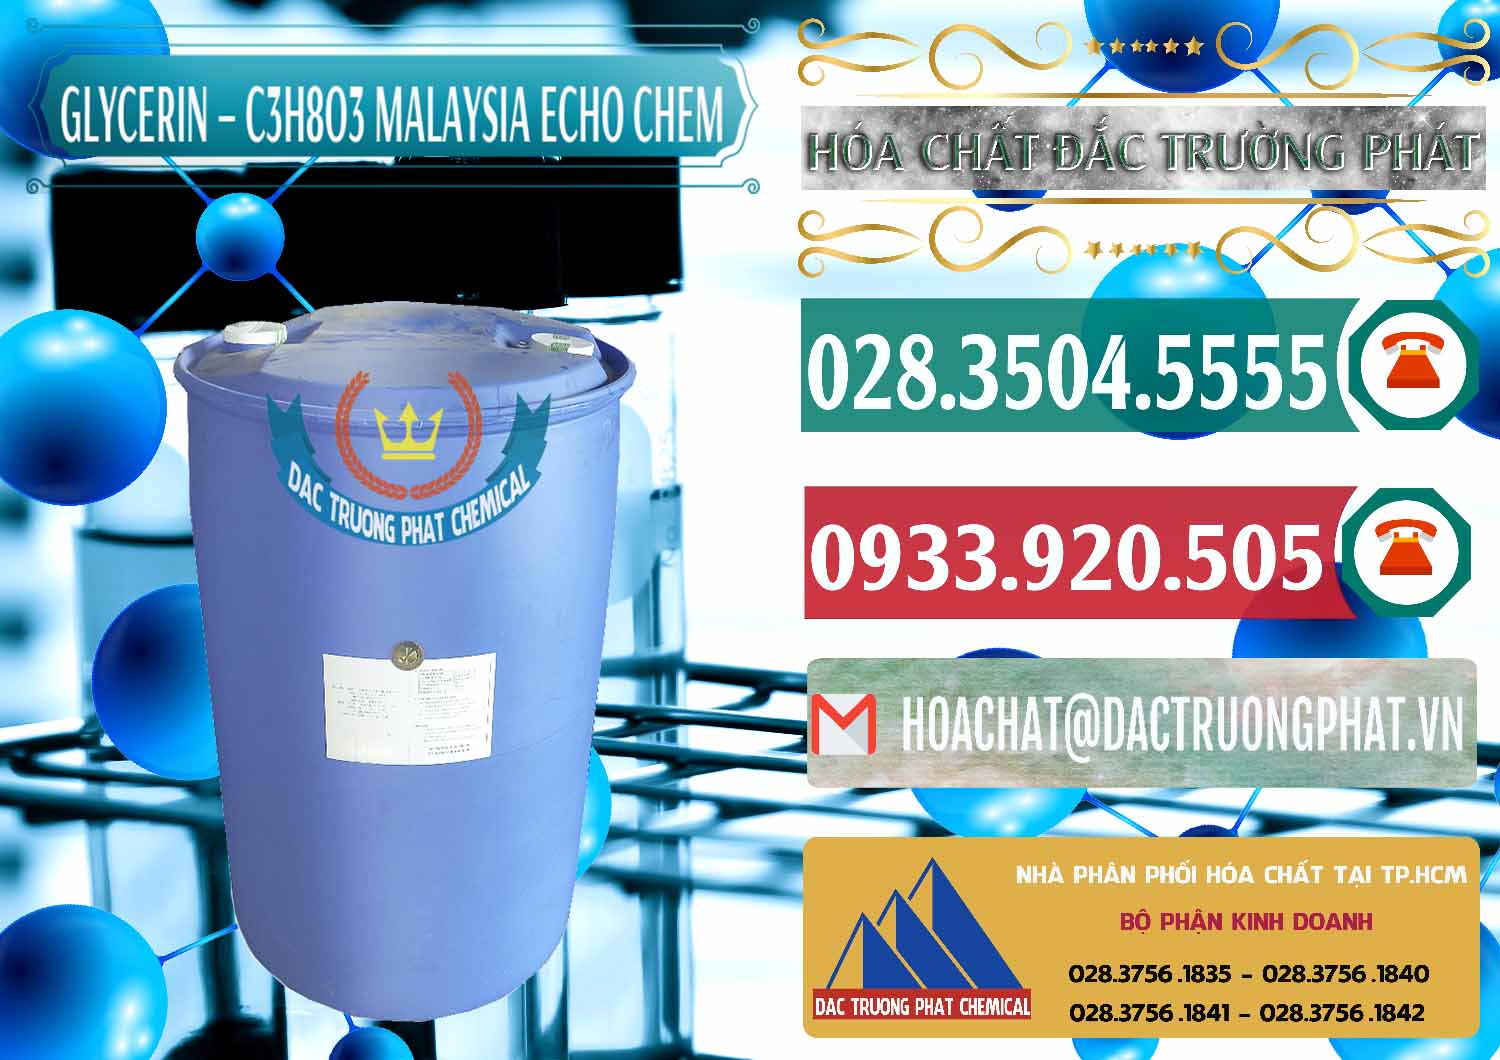 Cty chuyên kinh doanh _ bán C3H8O3 - Glycerin 99.7% Echo Chem Malaysia - 0273 - Công ty chuyên cung cấp _ nhập khẩu hóa chất tại TP.HCM - muabanhoachat.vn